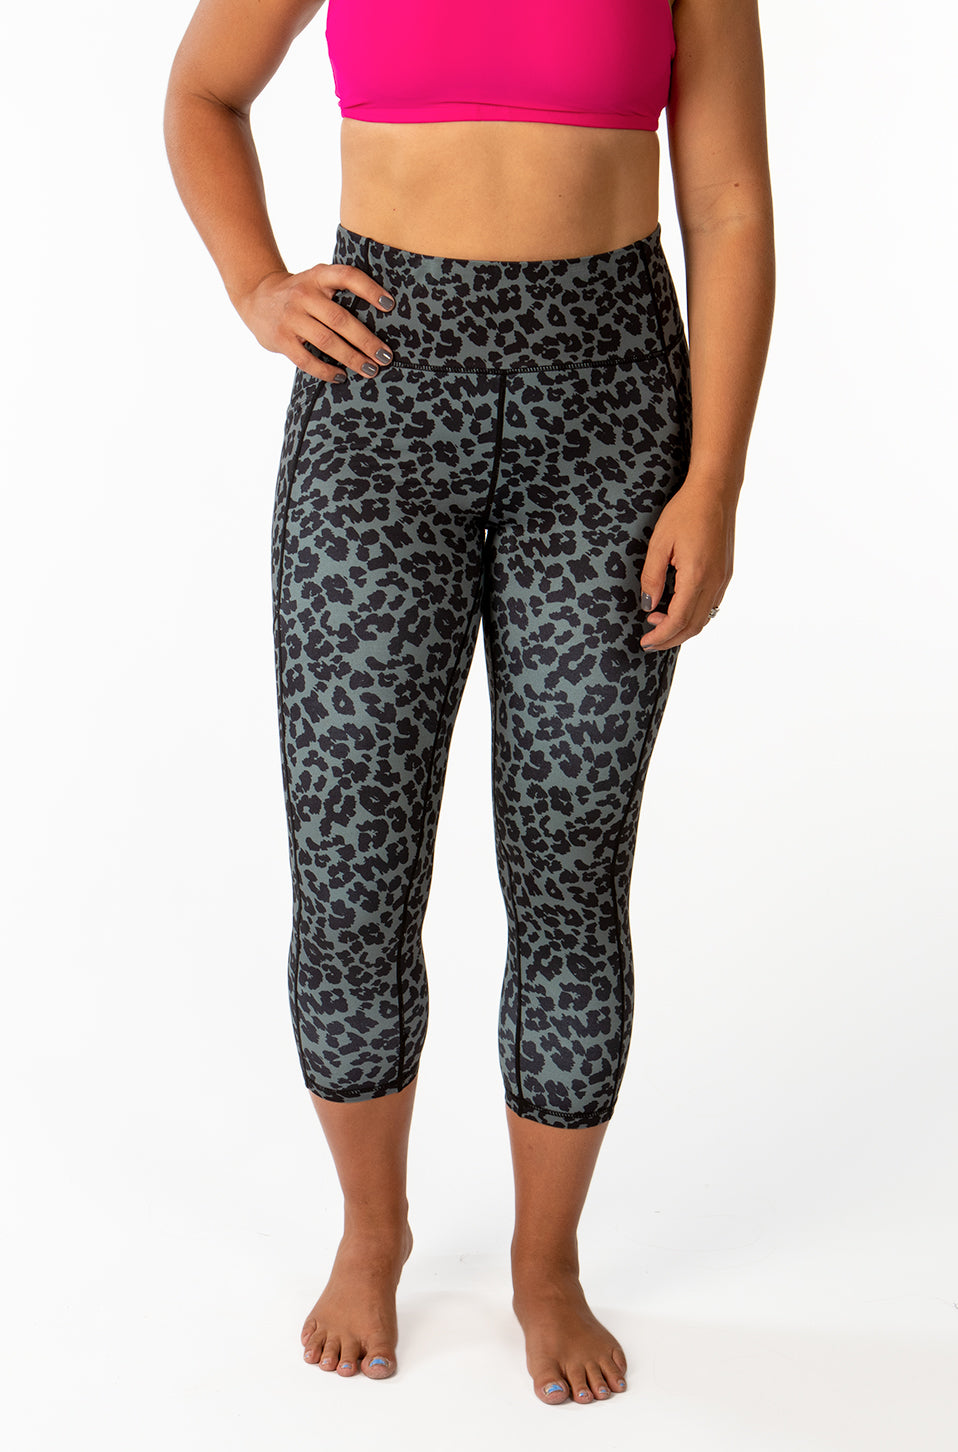 Leopard Capri & Leggings - [Luxe Fabric]